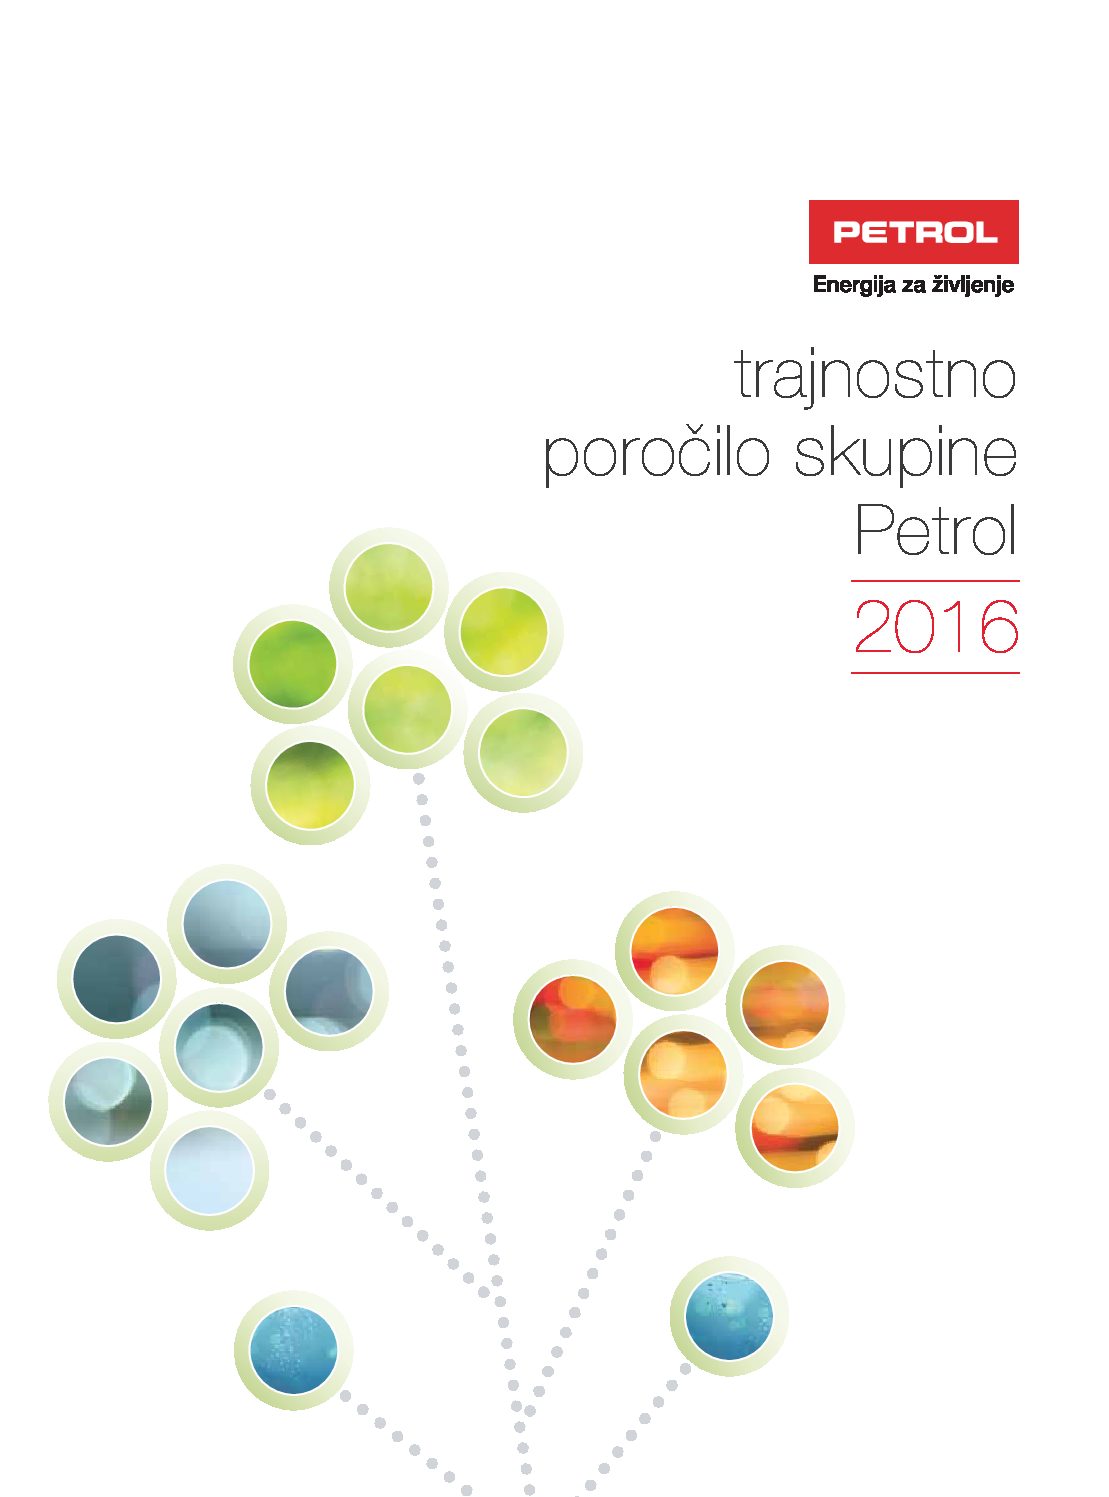 Trajnostno porocilo skupine Petrol 2016 pdf